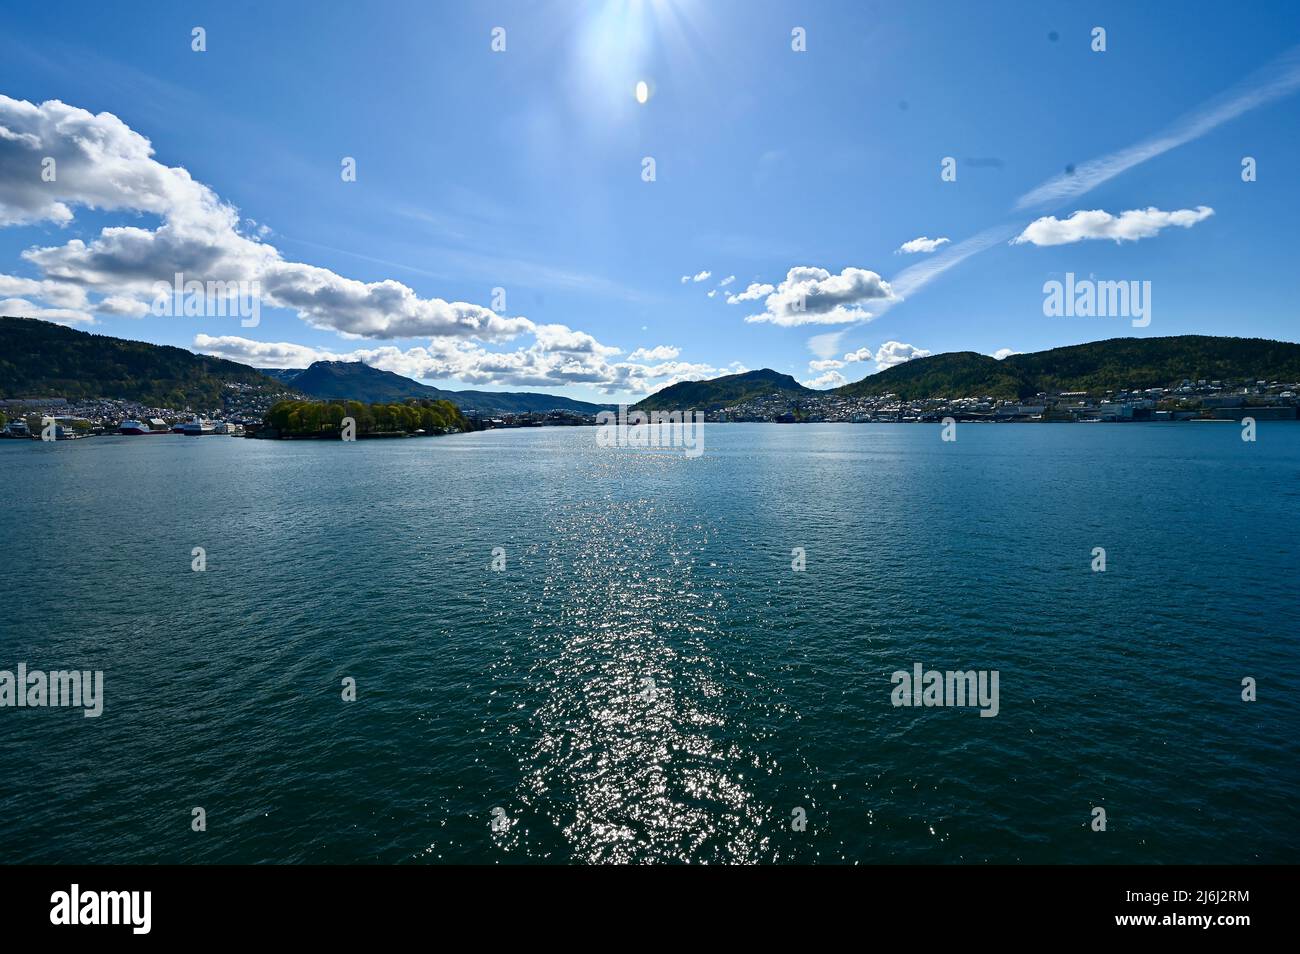 wunderschöne WasserreflexionenDurchquerung eines norwegischen Fjords Stock Photo